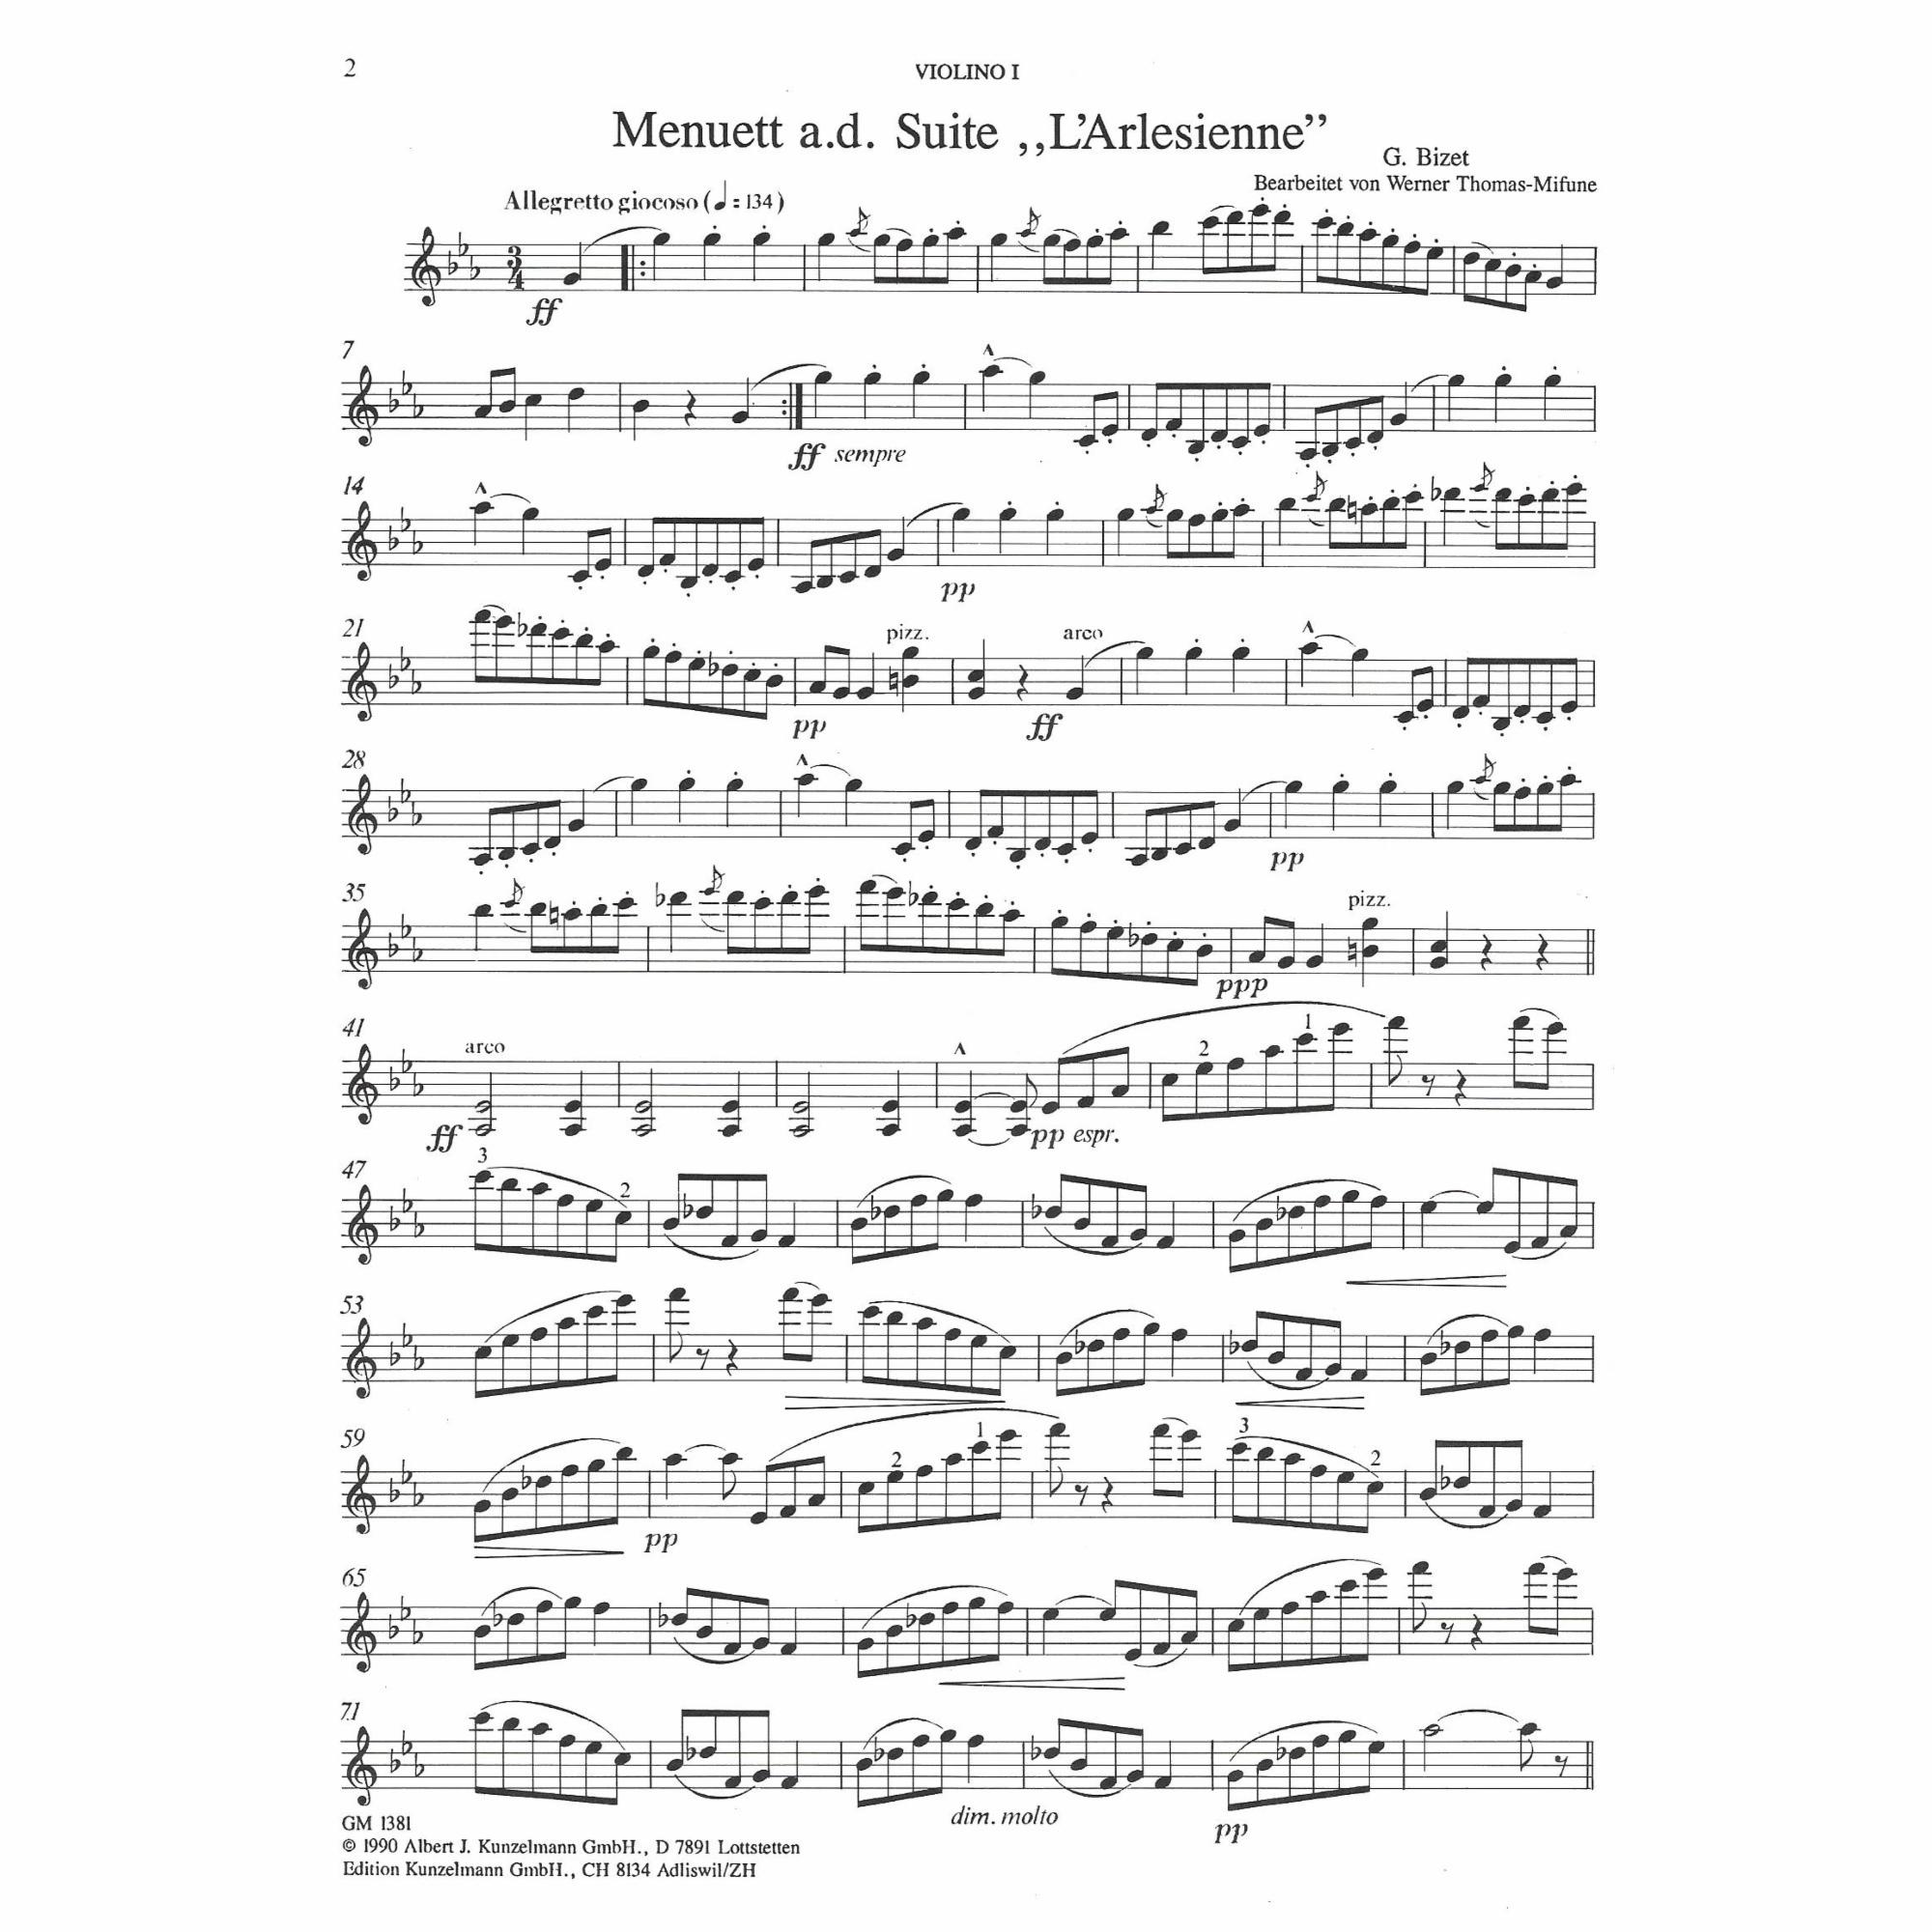 Sample: Vol. 1, Violin I (Pg. 2)